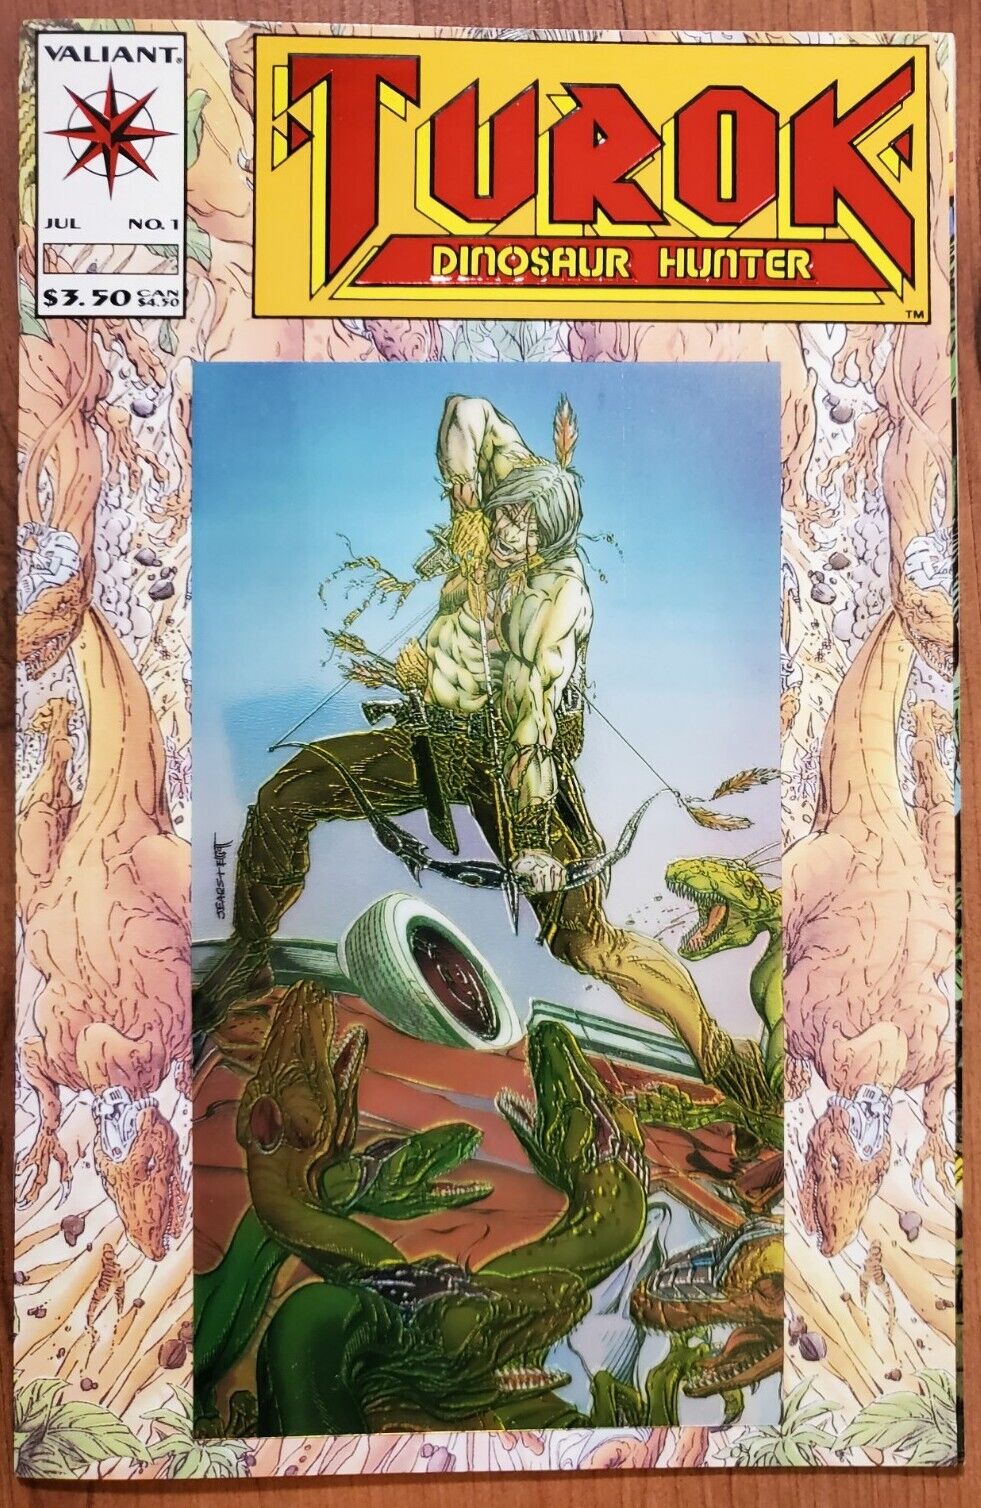 Turok Dinosaur Hunter #1 (June 1993 Valiant Comics) Red Foil Embossed cover VFNM